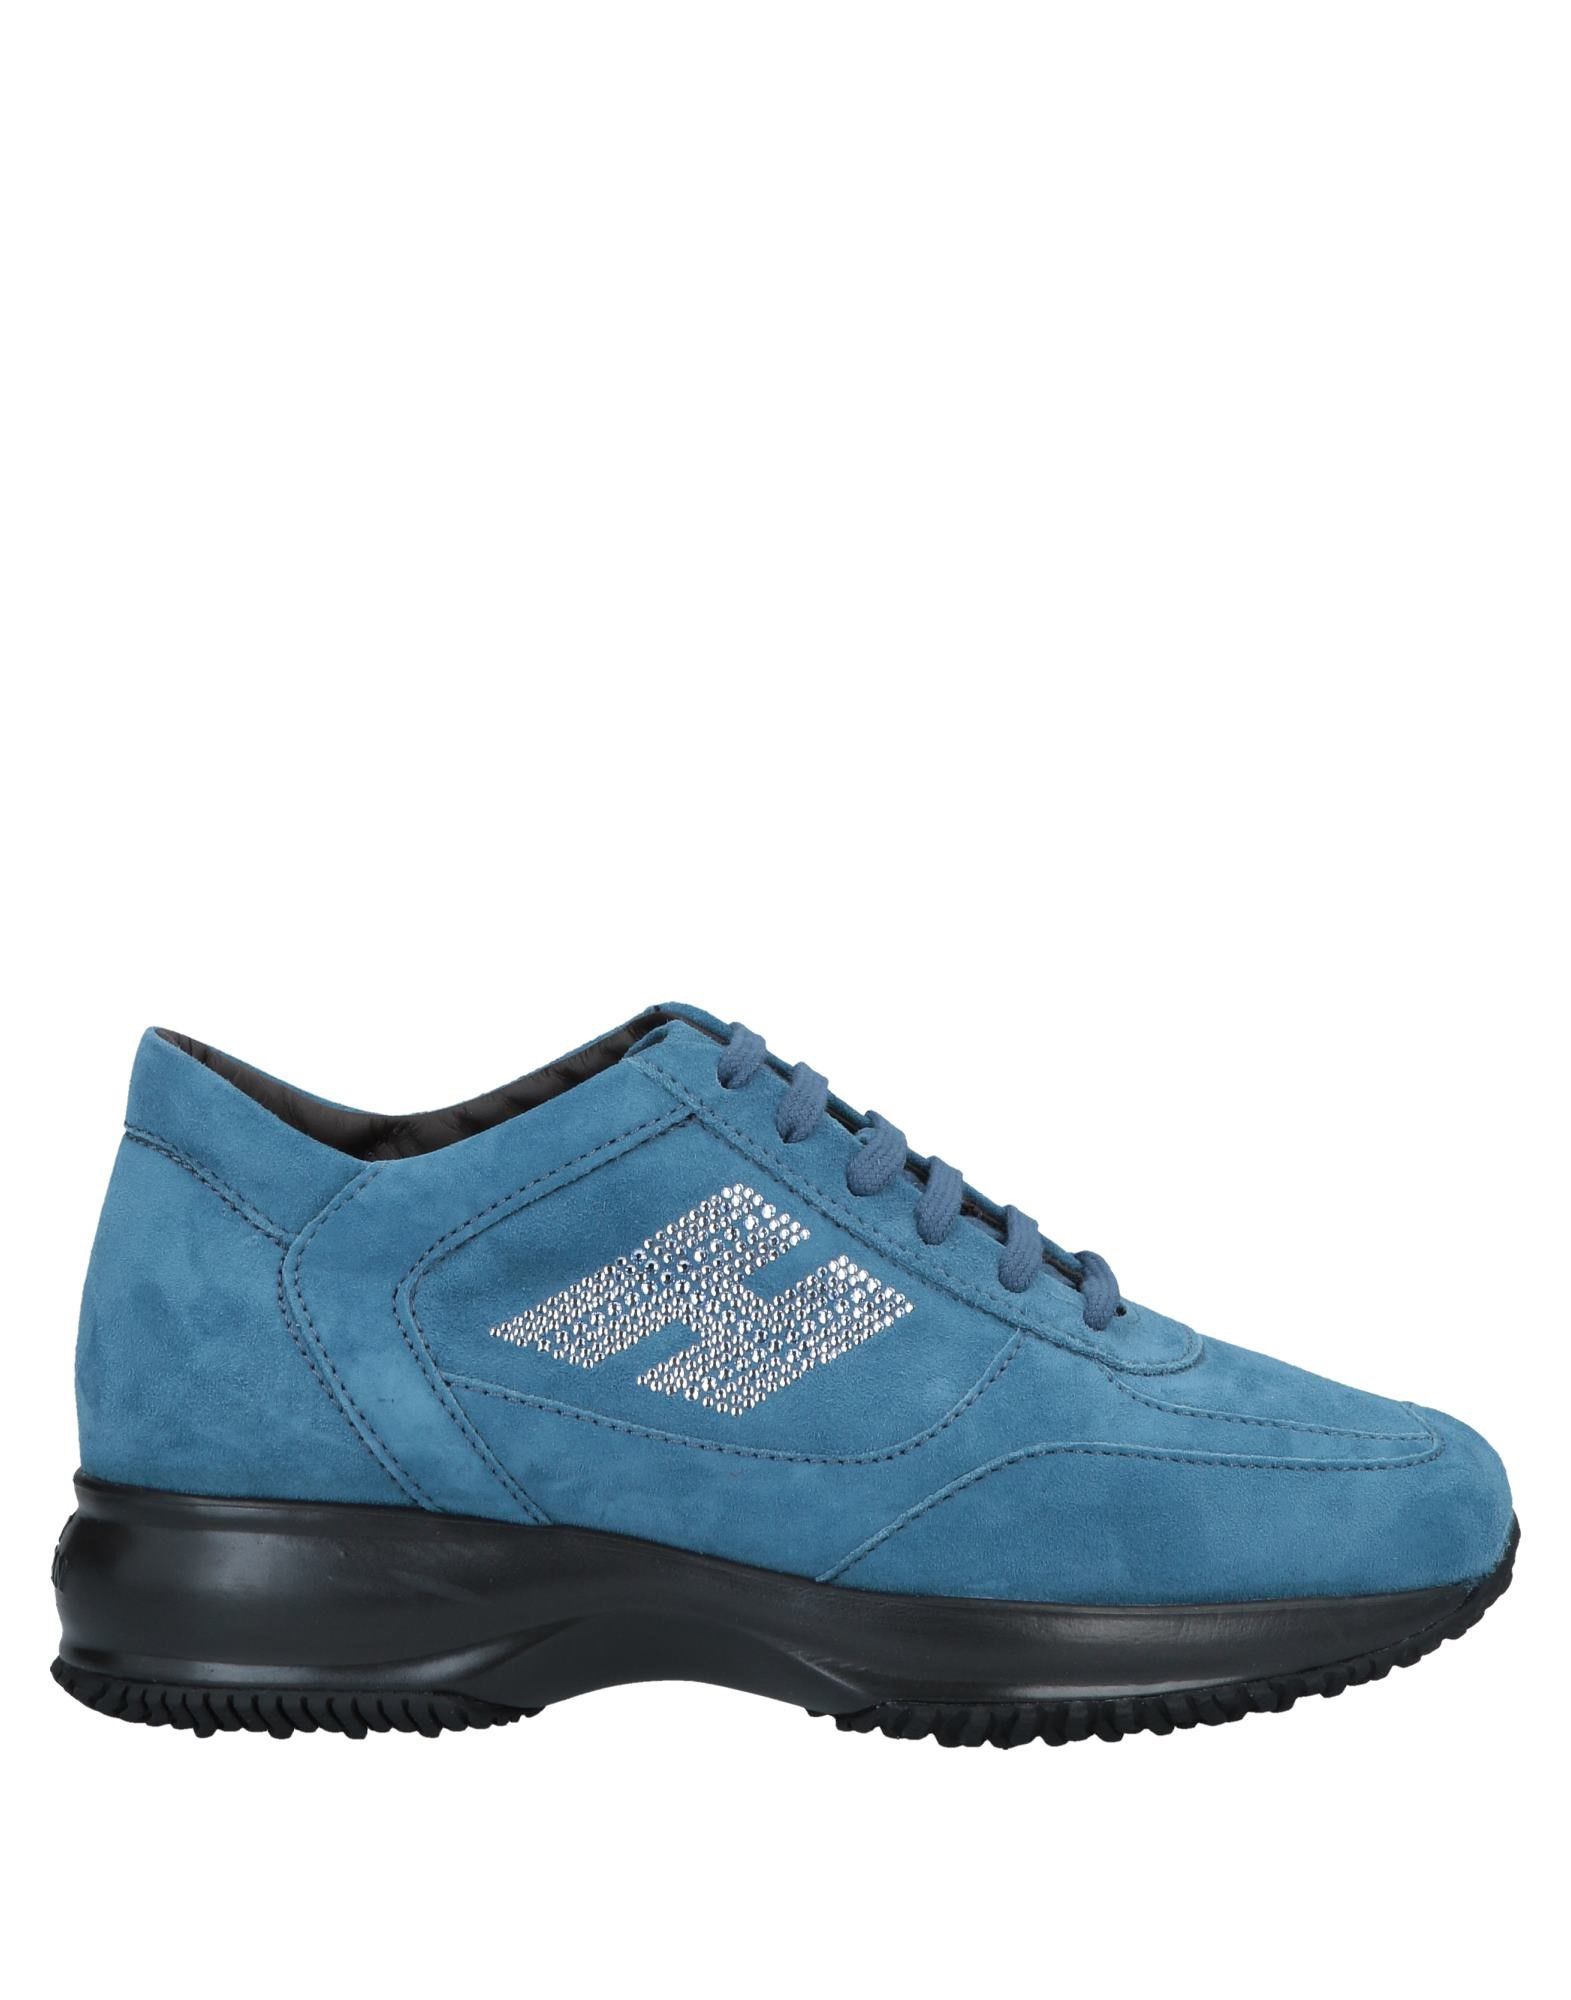 Shop Hogan Woman Sneakers Pastel Blue Size 8 Soft Leather